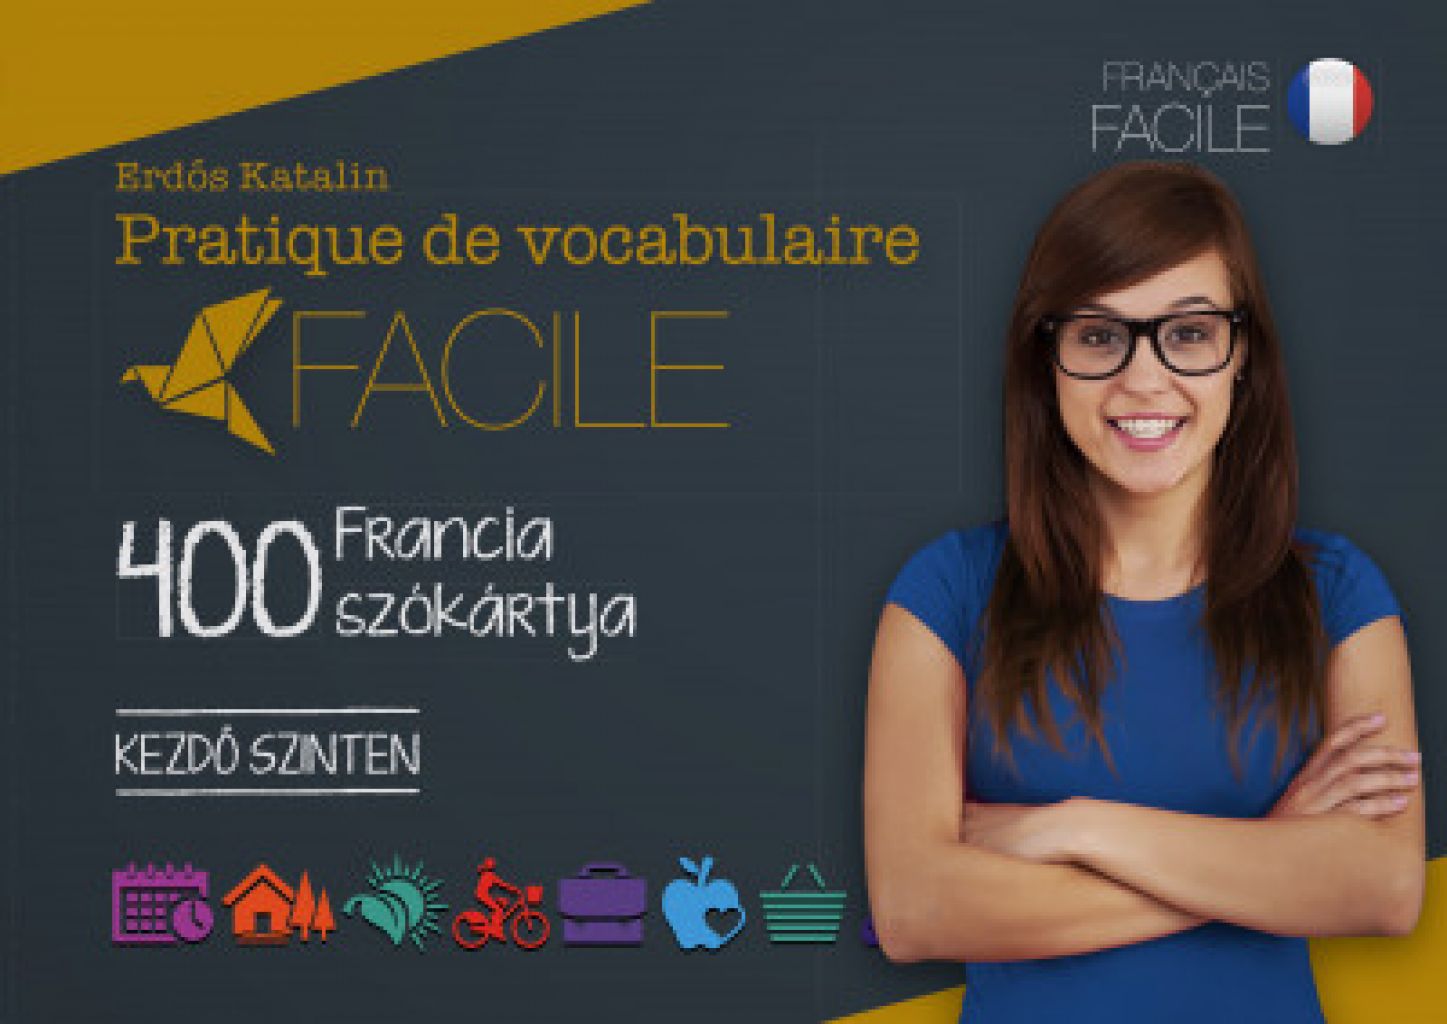 Erdős Katalin - Pratique de vocabulaire Facile - 400 francia szókártya - Kezdő szinten